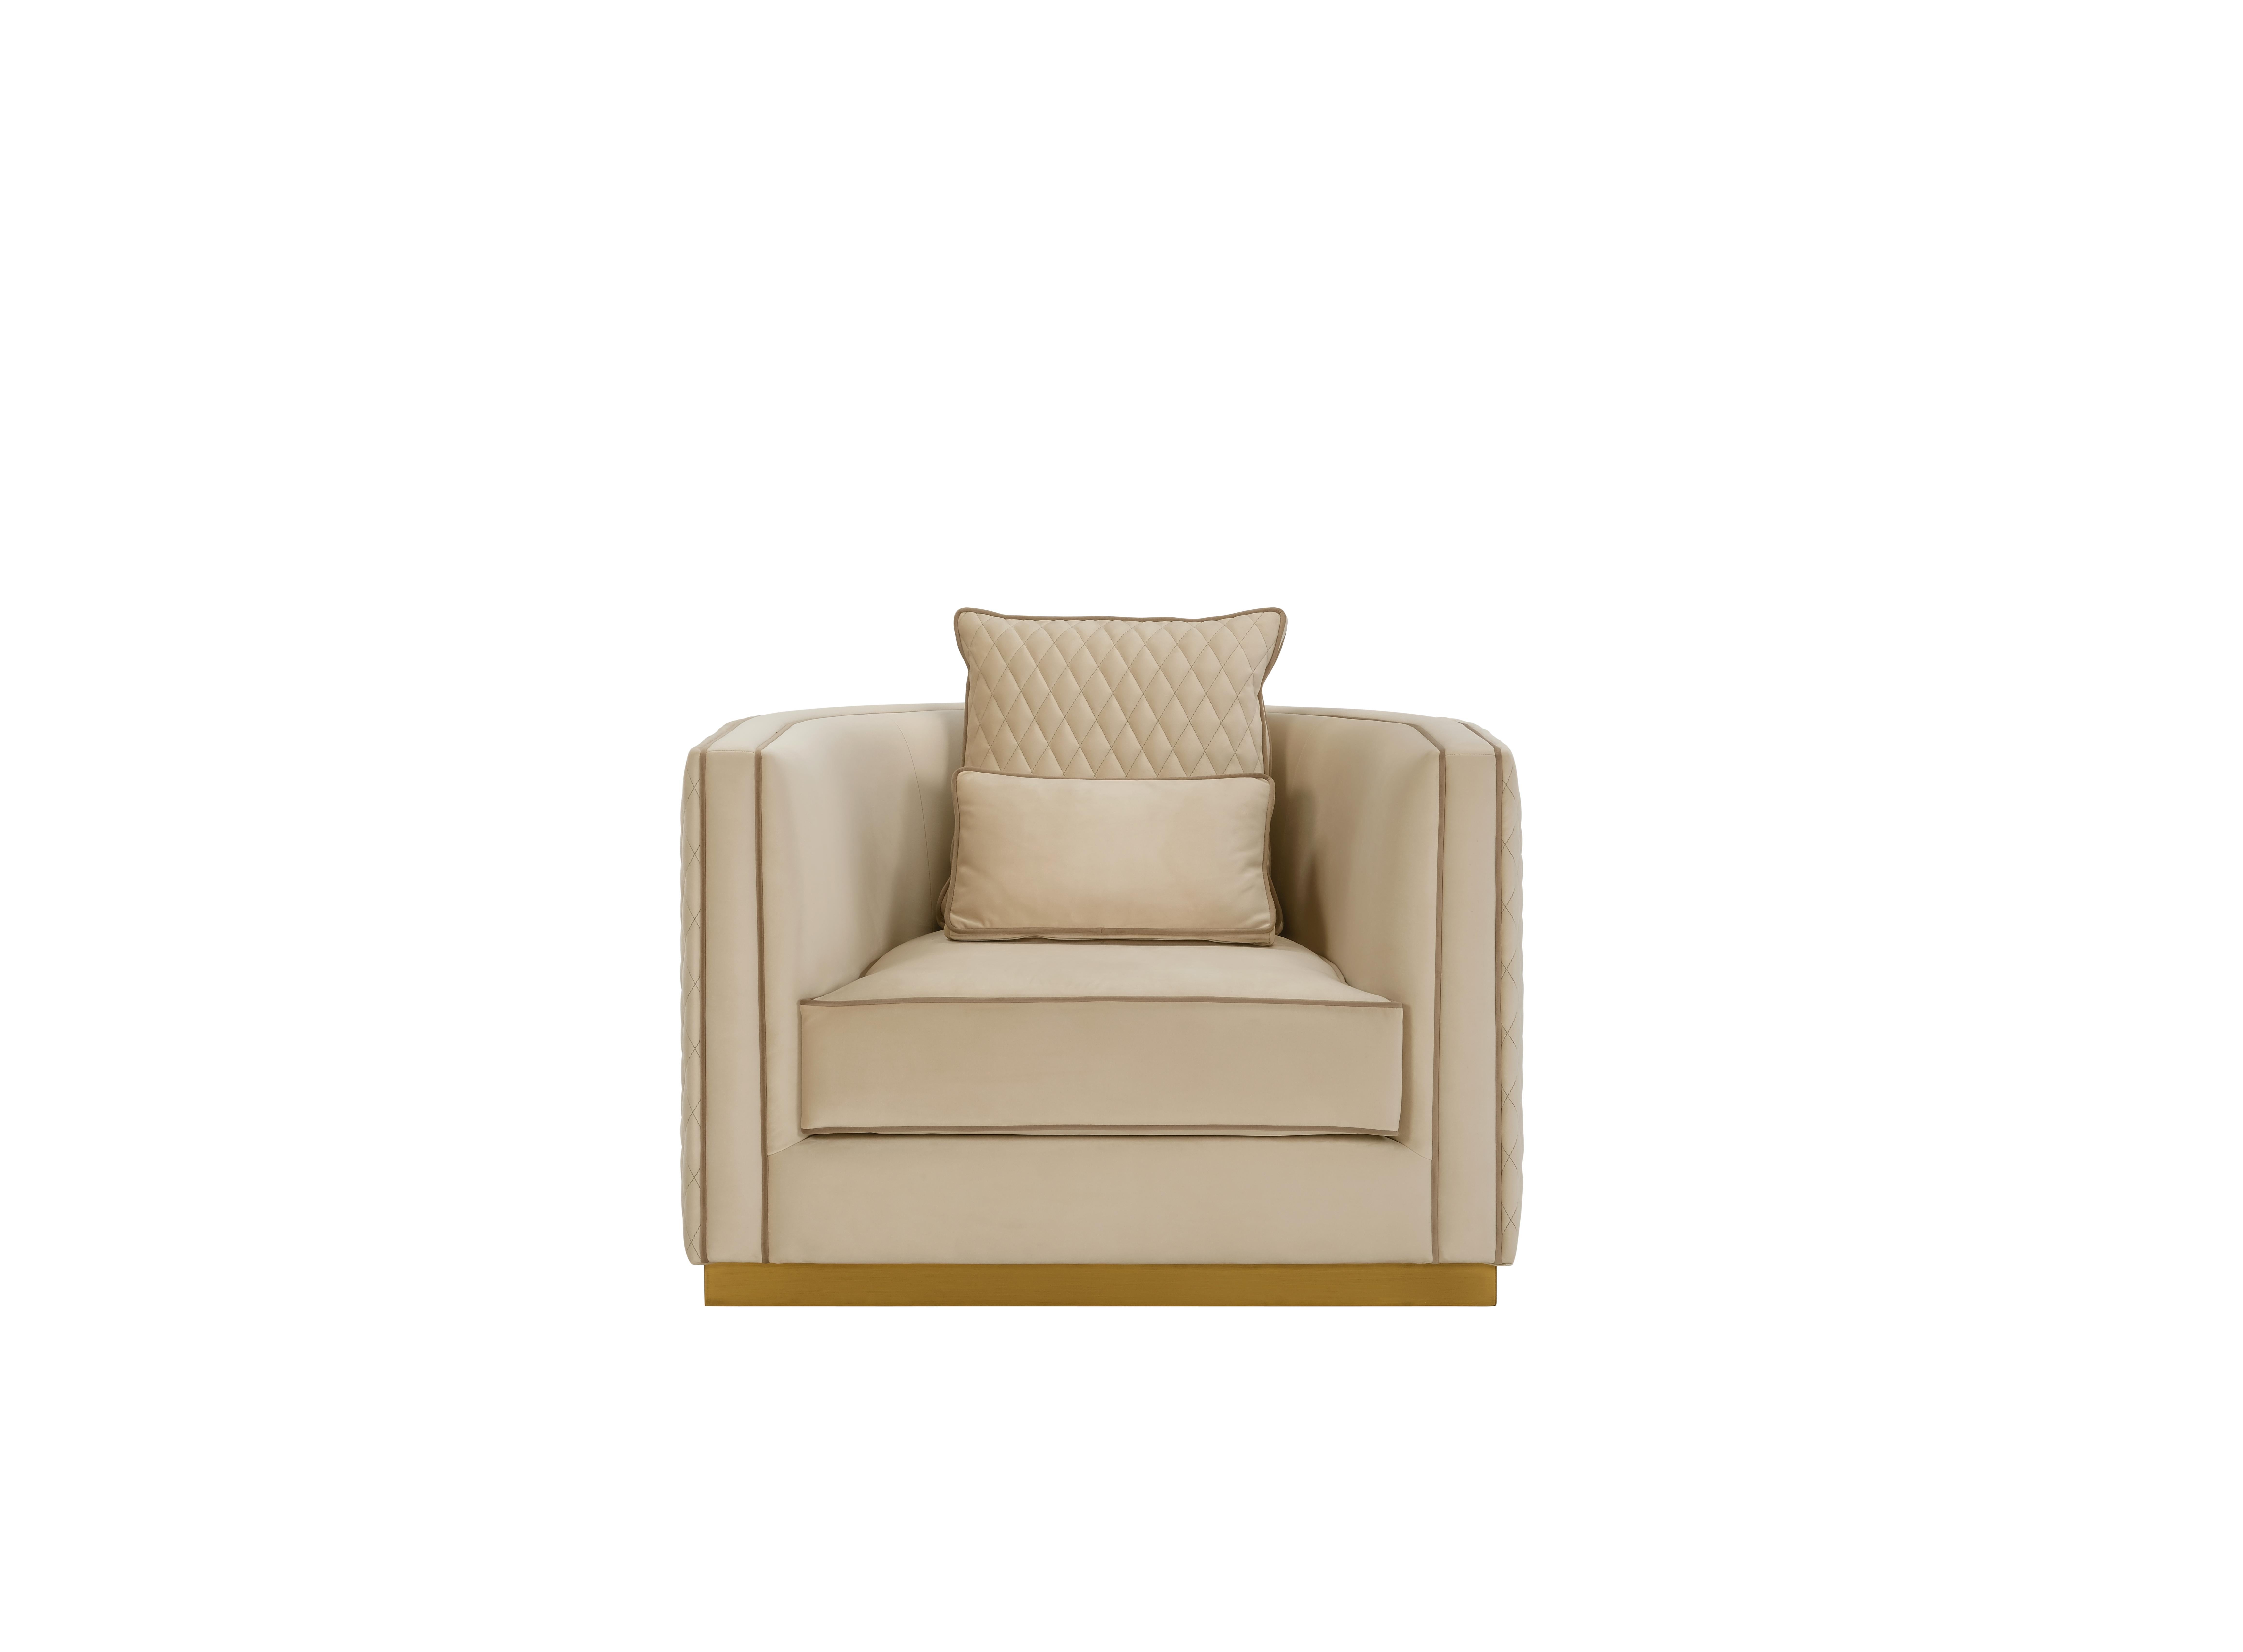 GRANT ist ein hervorragender Sessel mit einer umhüllenden Rückenlehne und einem äußerst raffinierten Design, das durch die mit Federn gefüllten Kissen für ein hervorragendes Komfortgefühl ergänzt wird. Grant ermöglicht die Kombination verschiedener